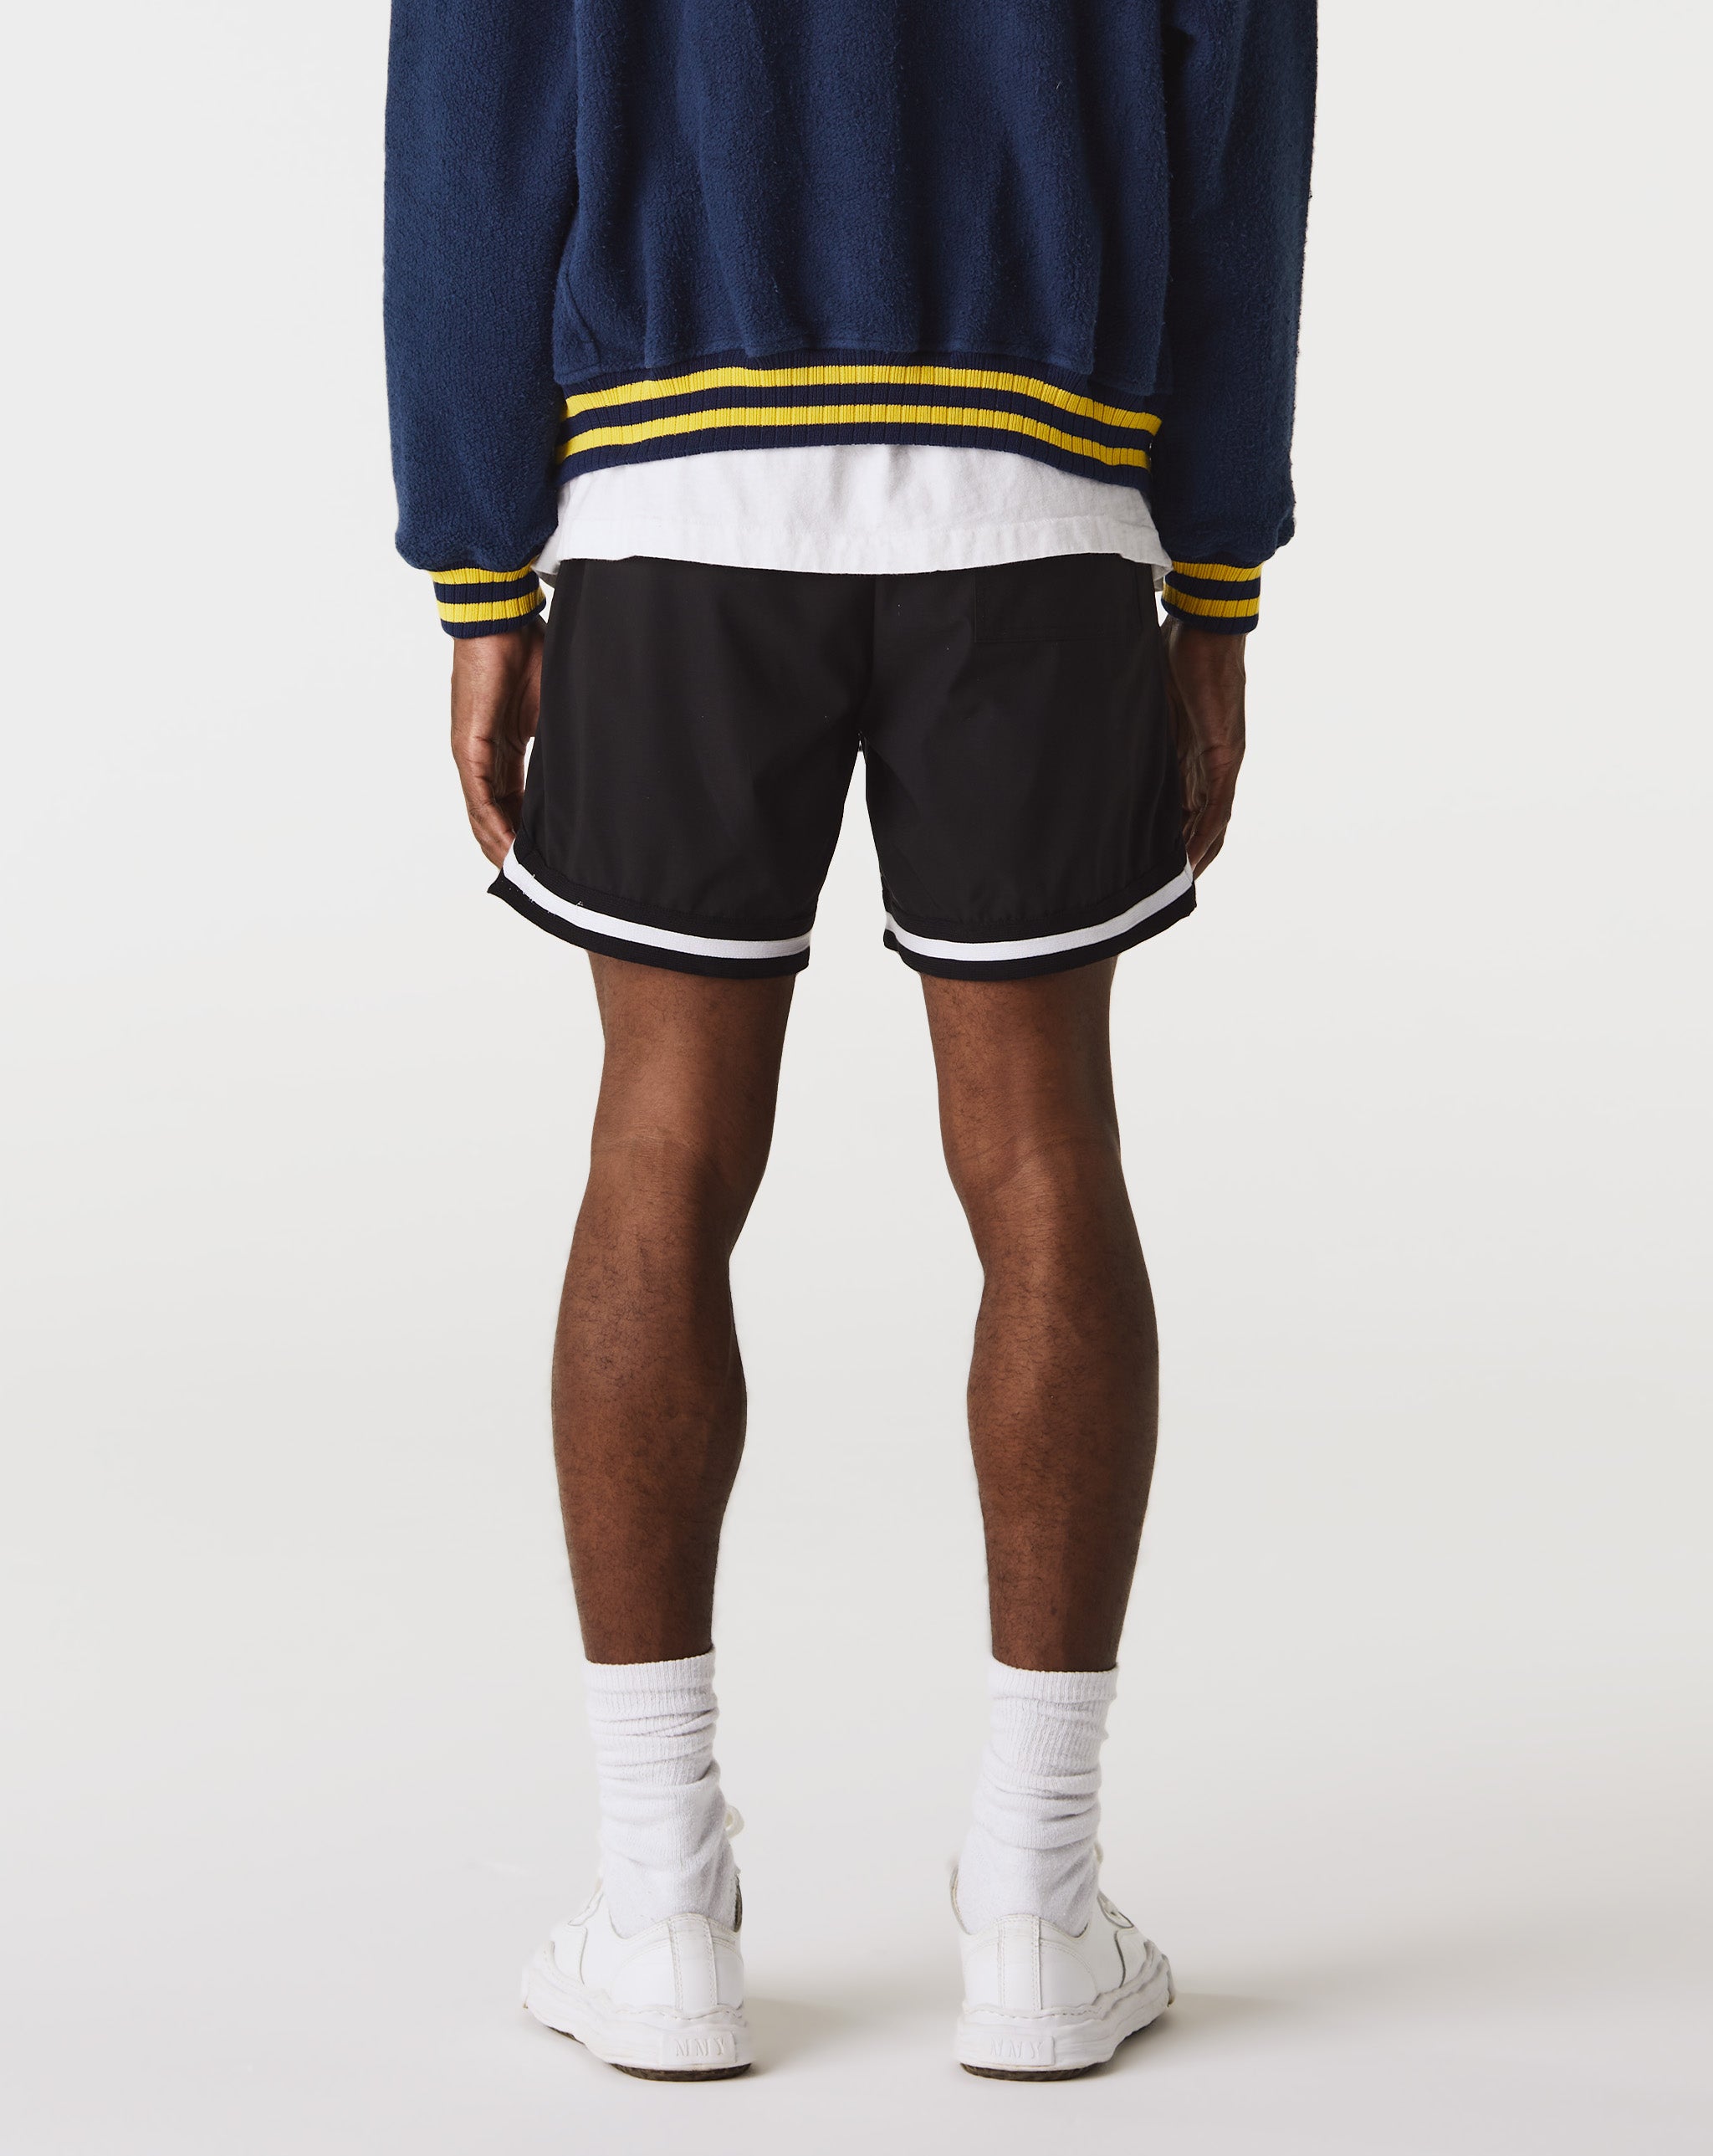 Rhude Moonlight Shorts  - Cheap Urlfreeze Jordan outlet